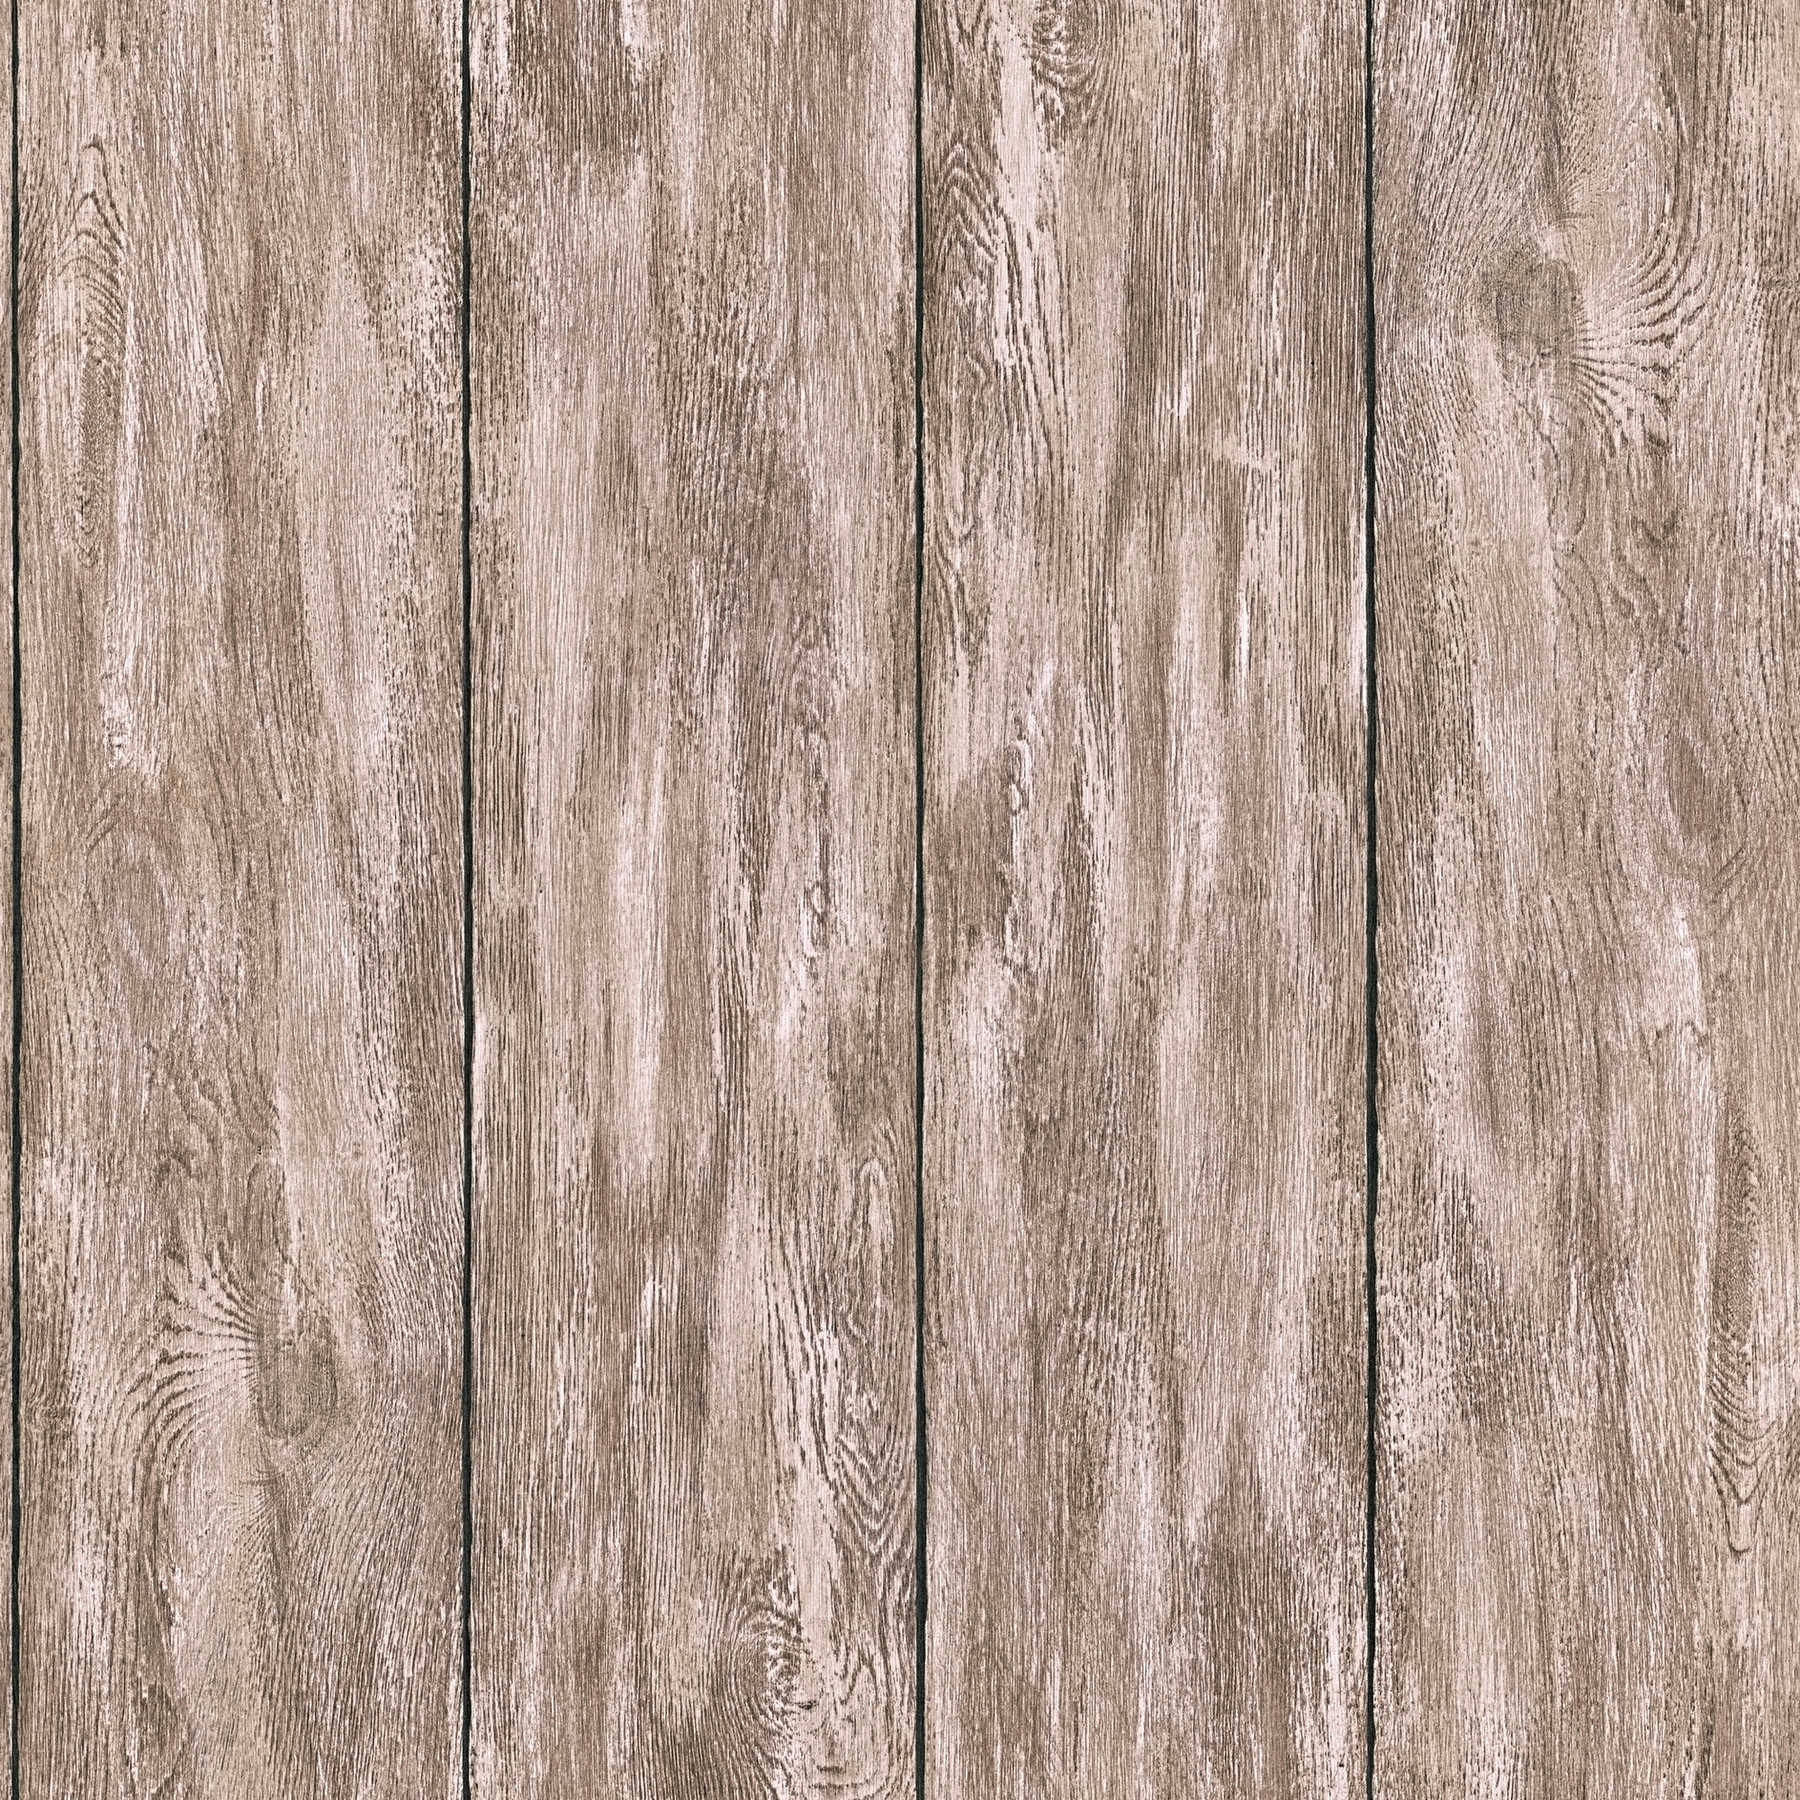 Behang houtlook voor een gezellig landhuisgevoel - bruin, beige, grijs
